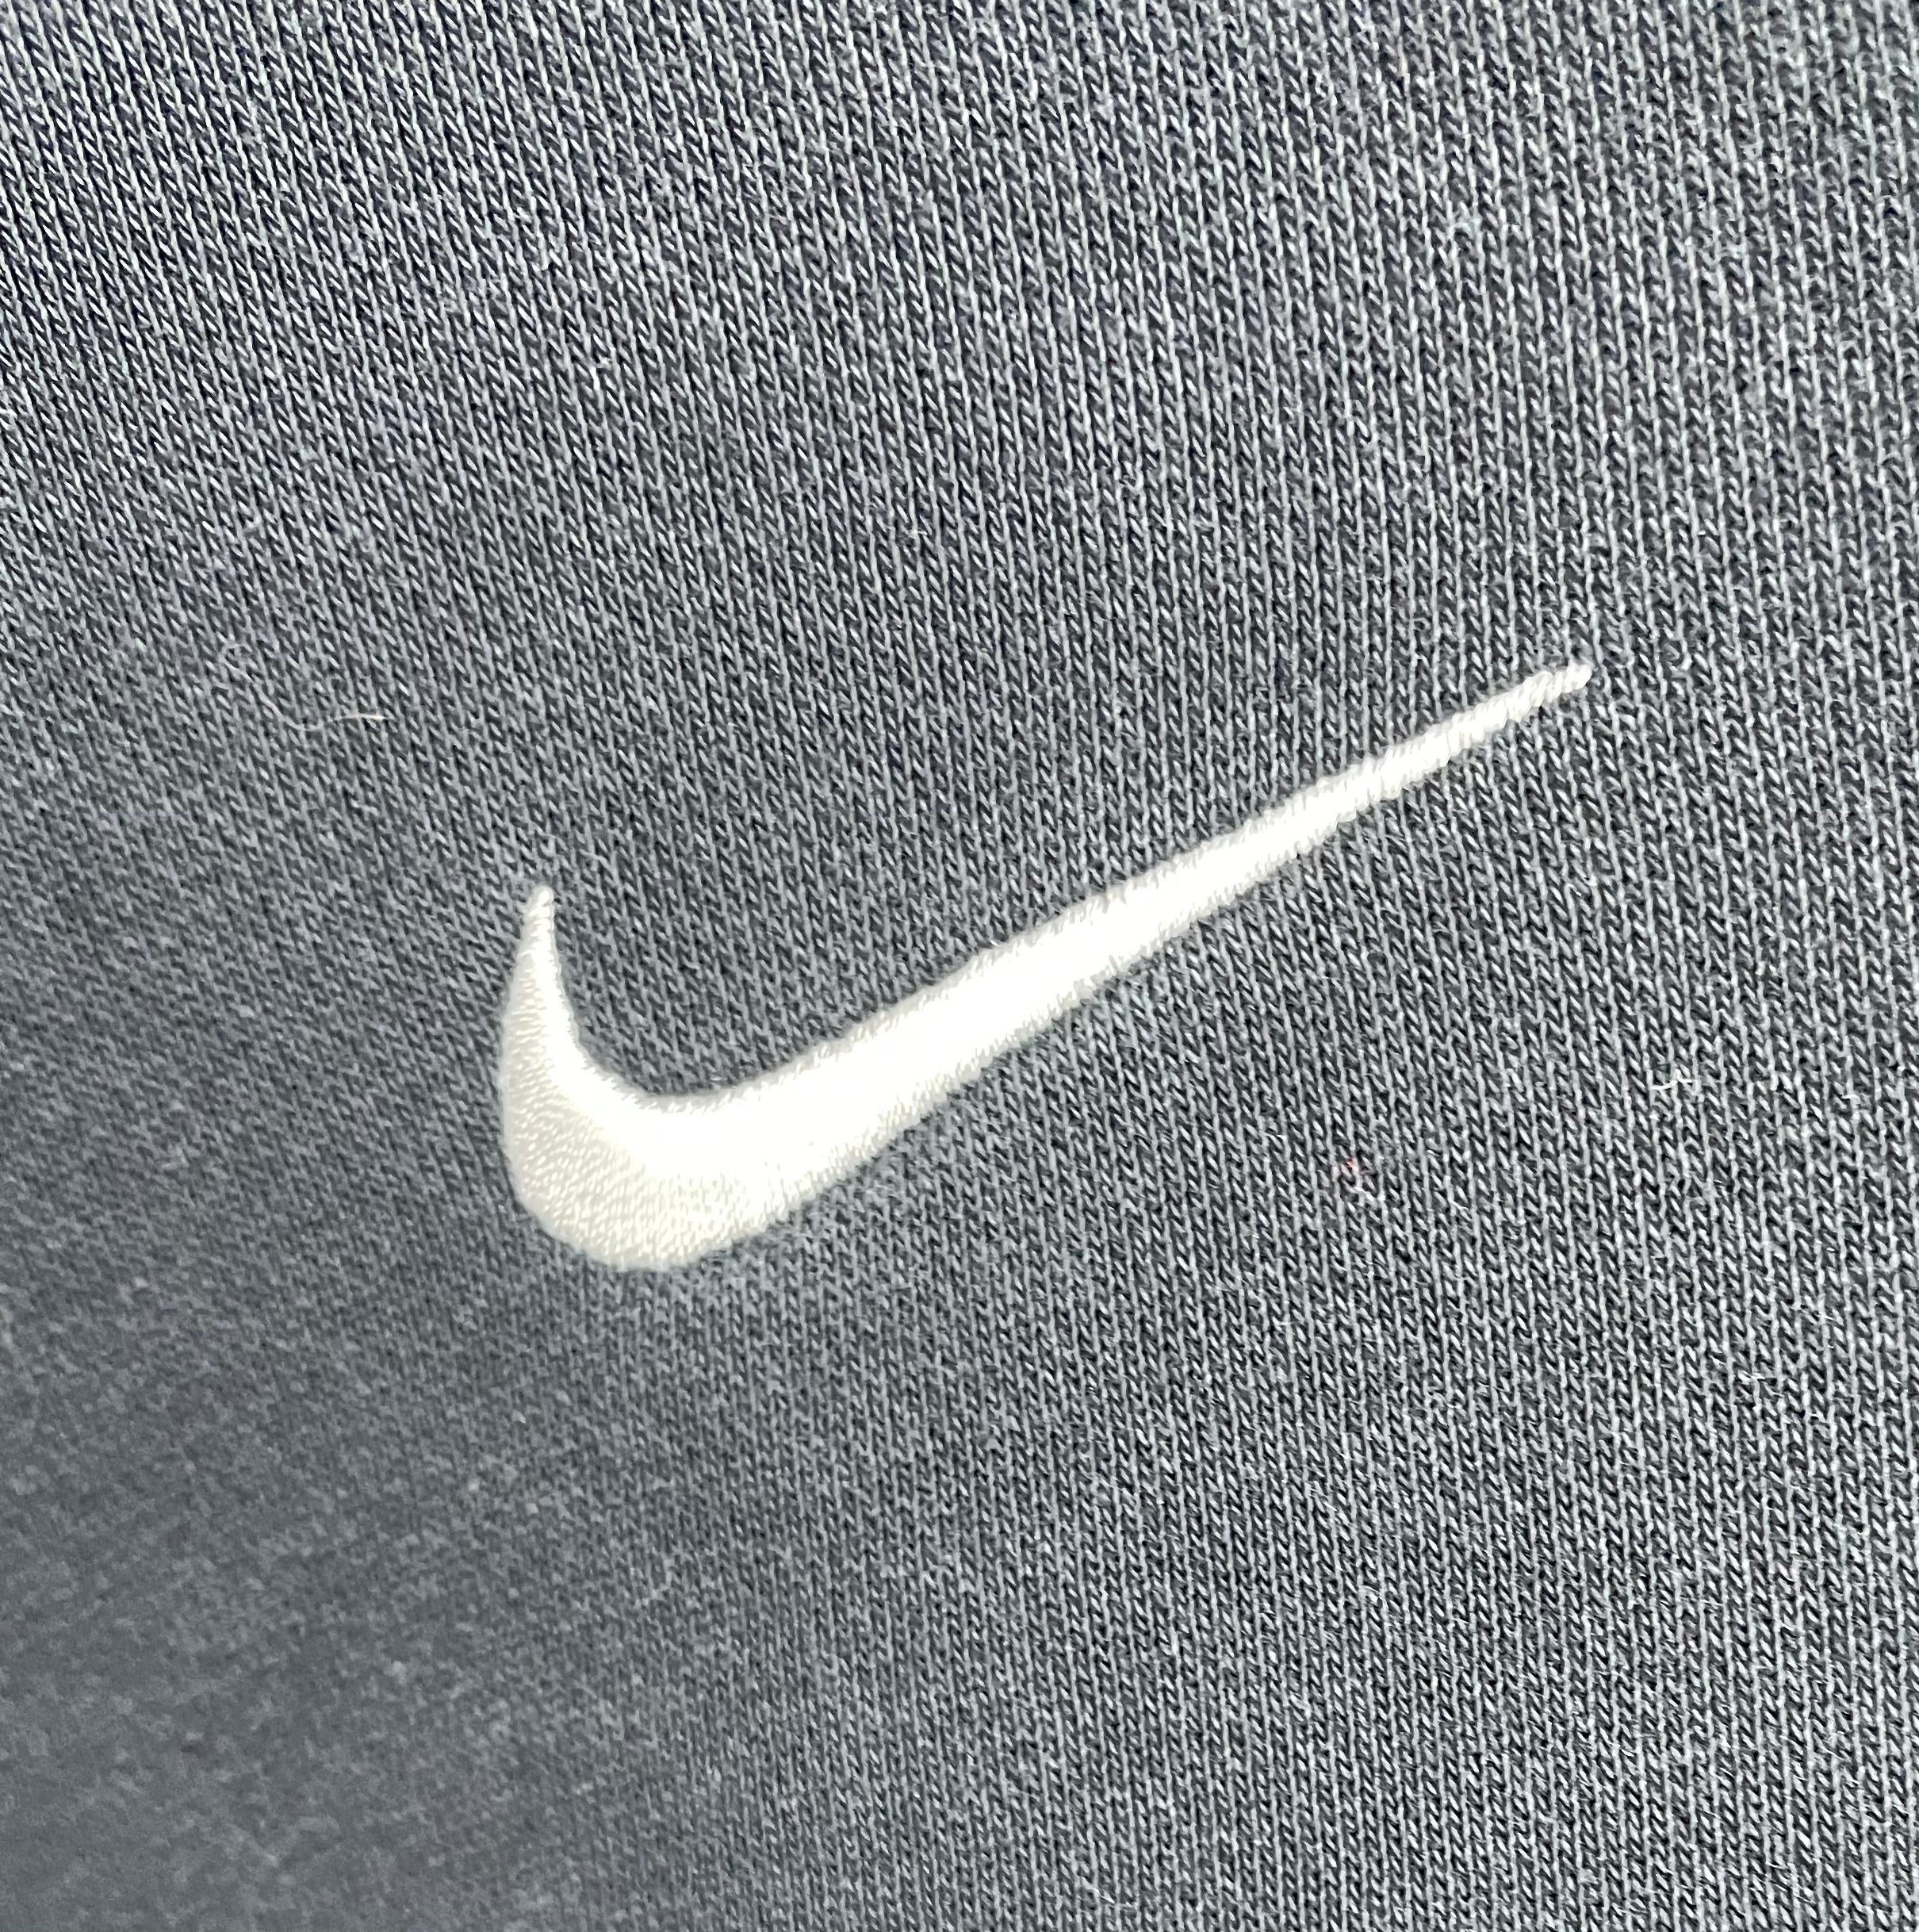 Nike Vintage Sweater Sky Zone Schwarz Größe L